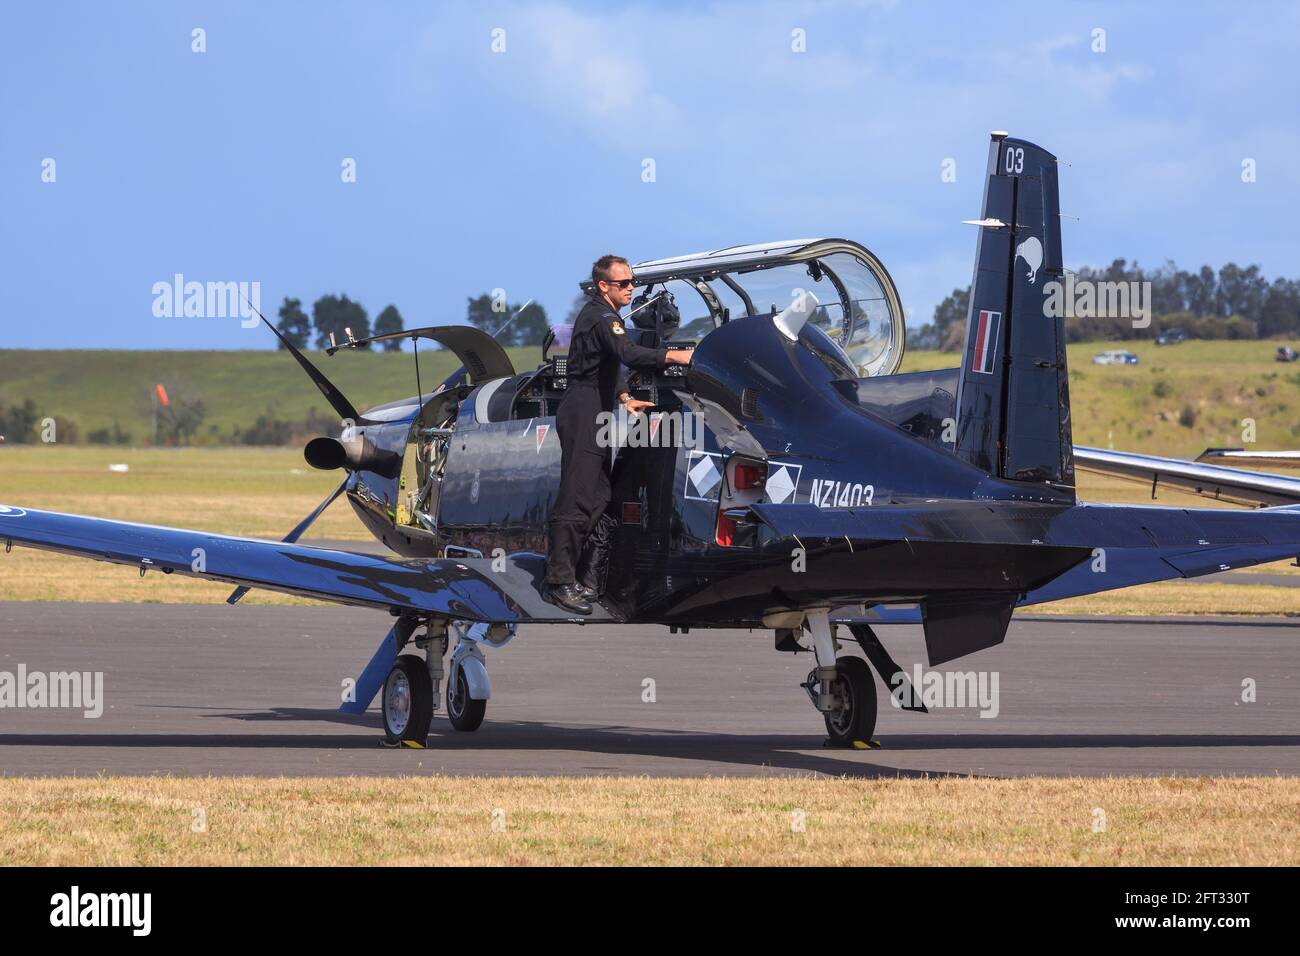 Un aereo Beechcraft T-6 Texan II trainer volato dai Black Falcons, la squadra aerobatica della Royal New Zealand Air Force Foto Stock